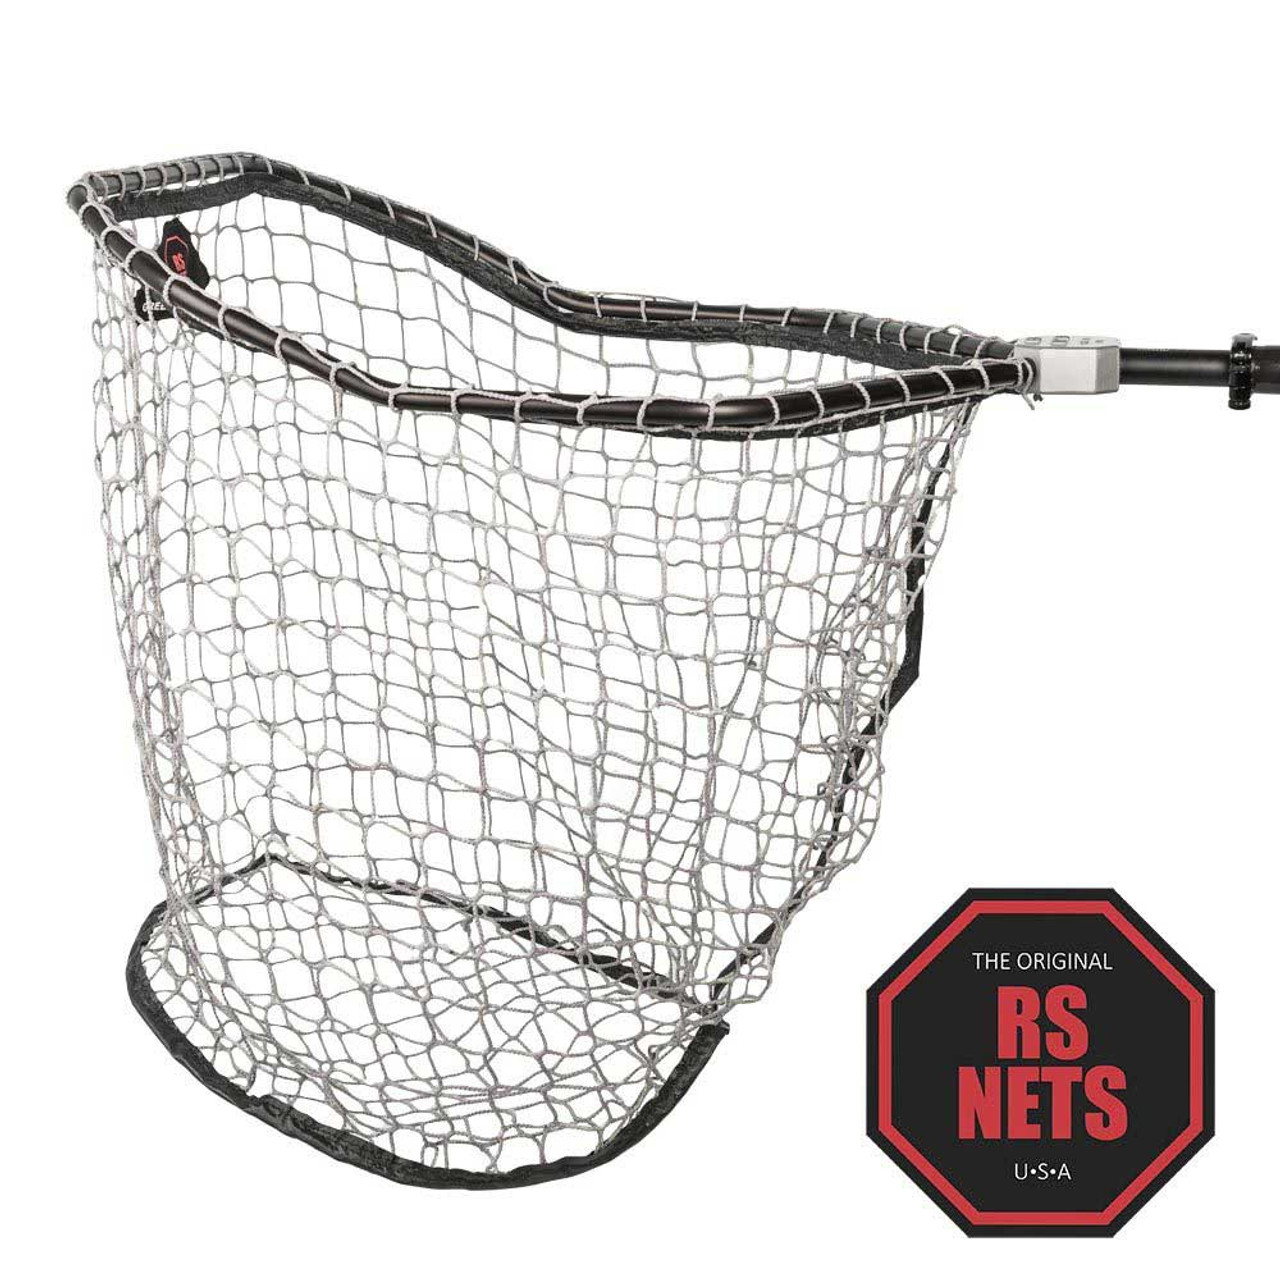 Green Bay Landing Net, Original RS Nets